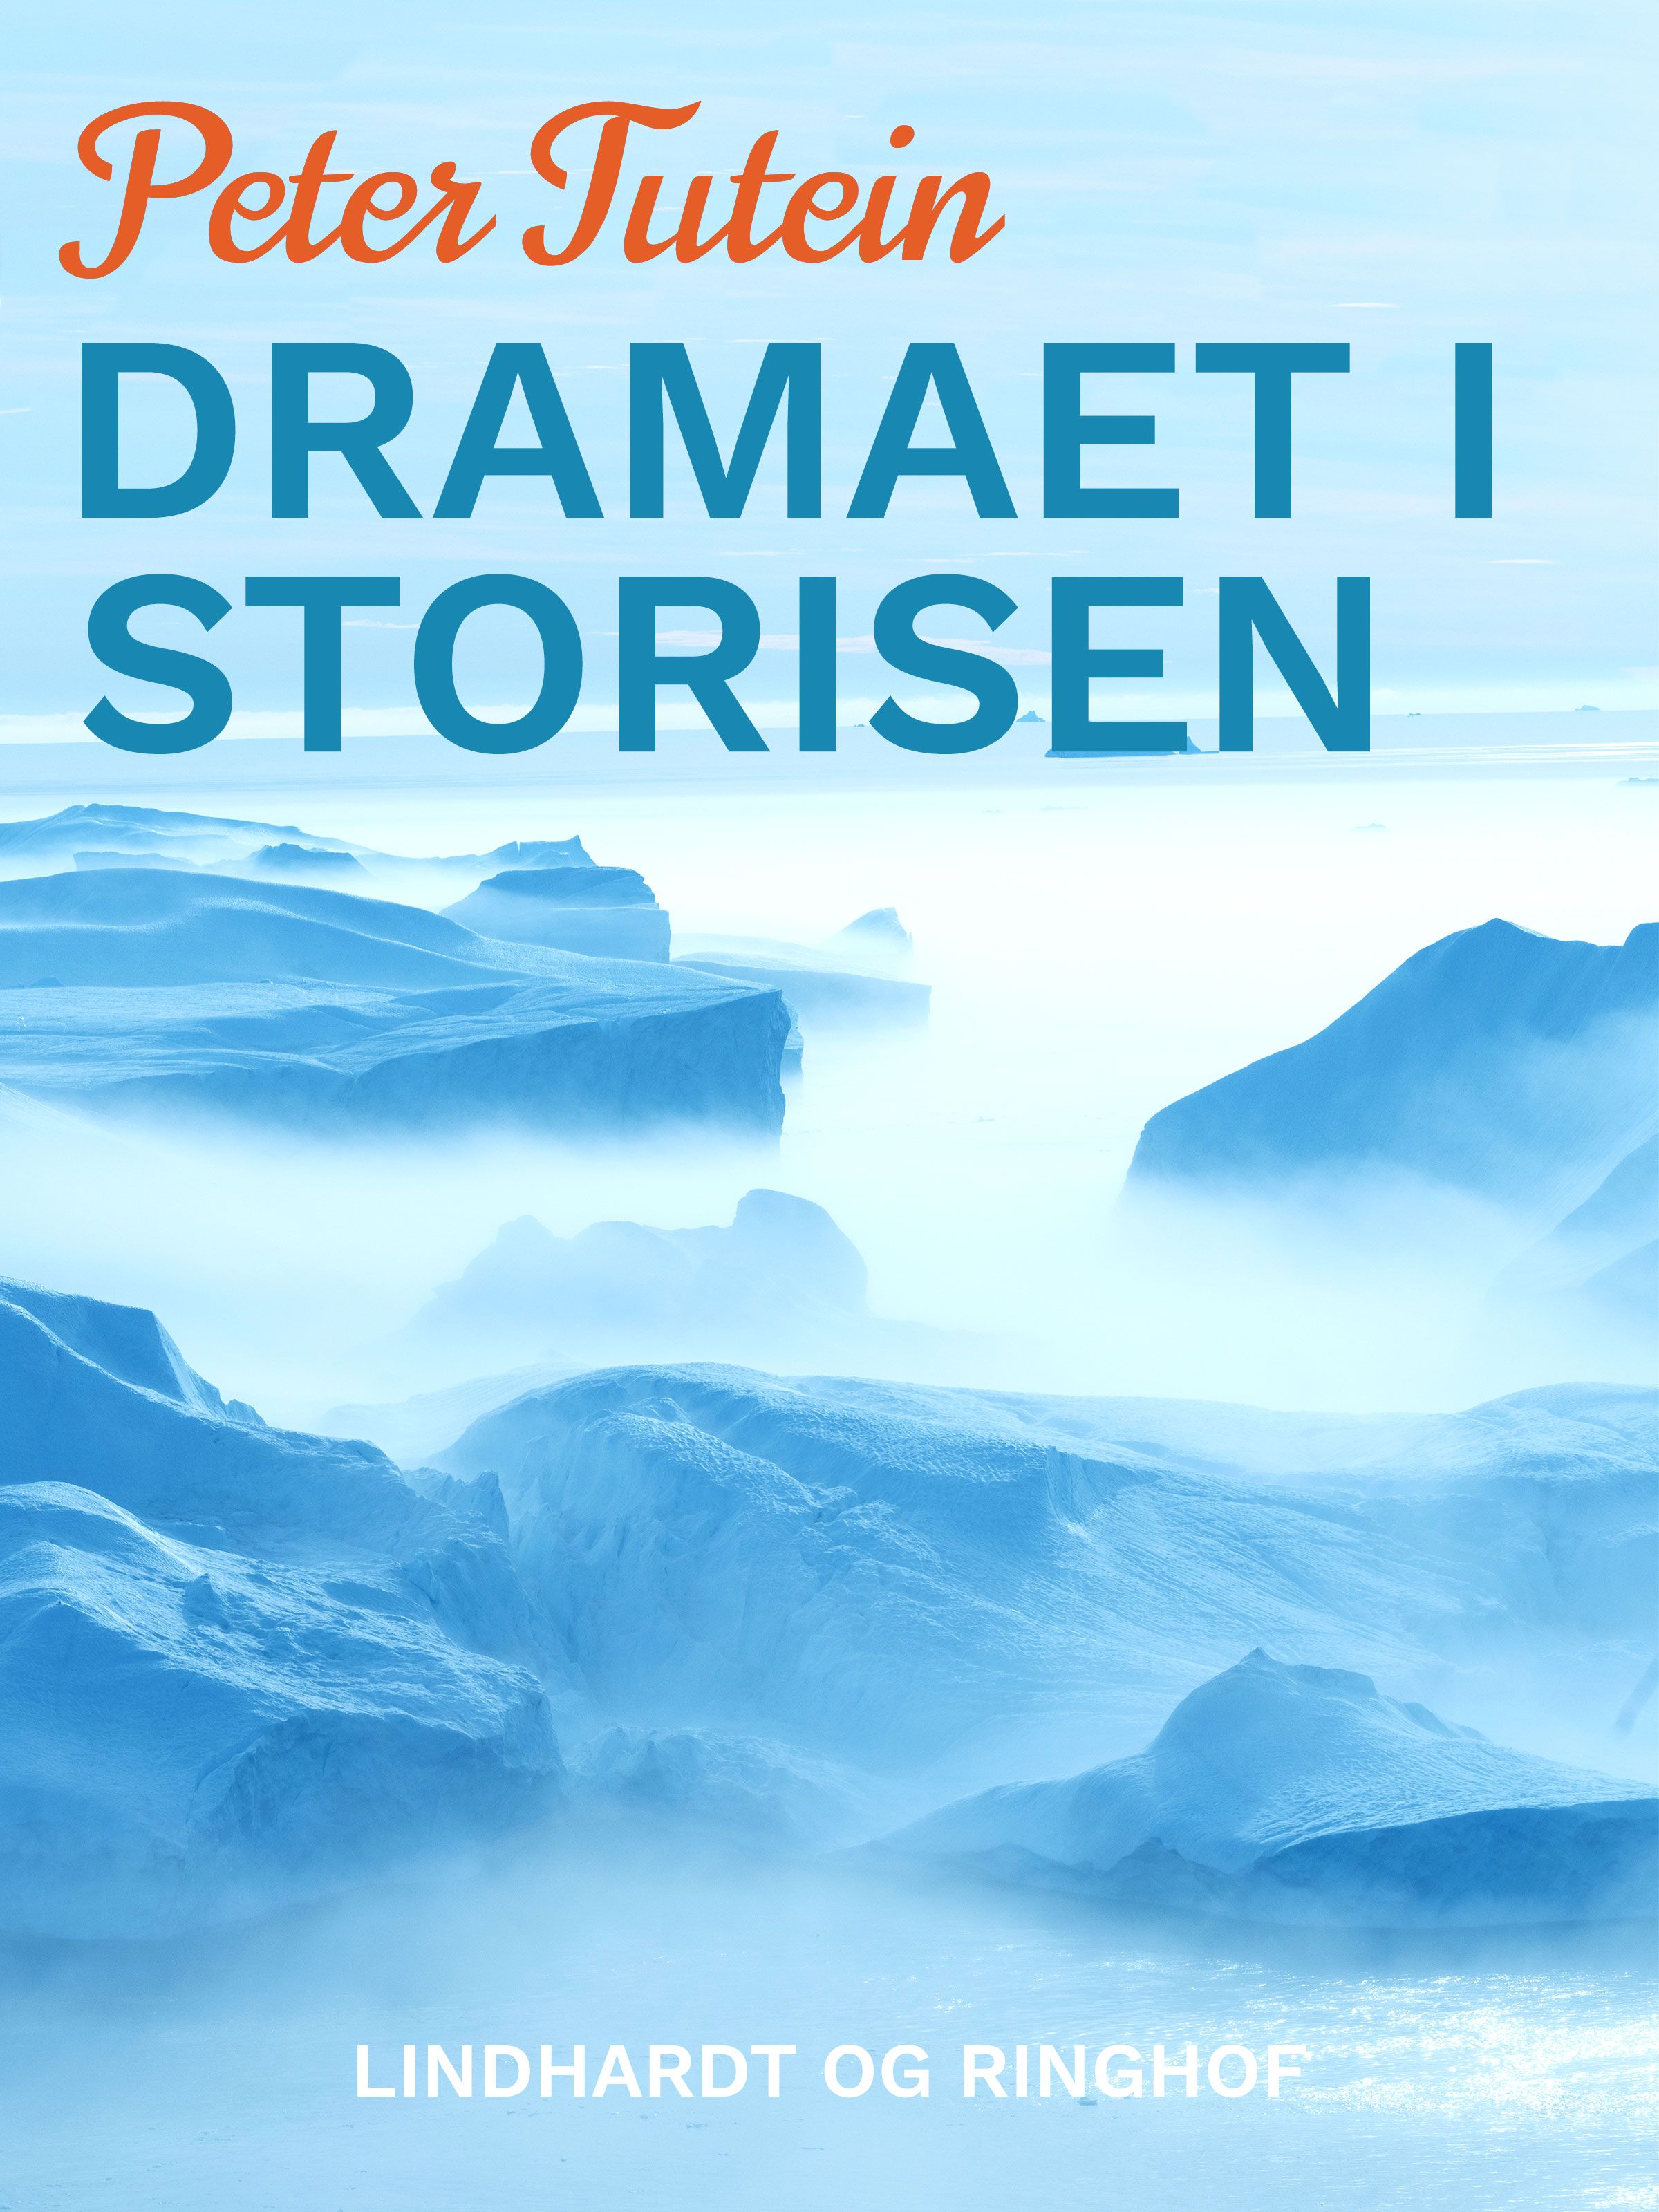 Dramaet i storisen, e-bog af Peter Tutein